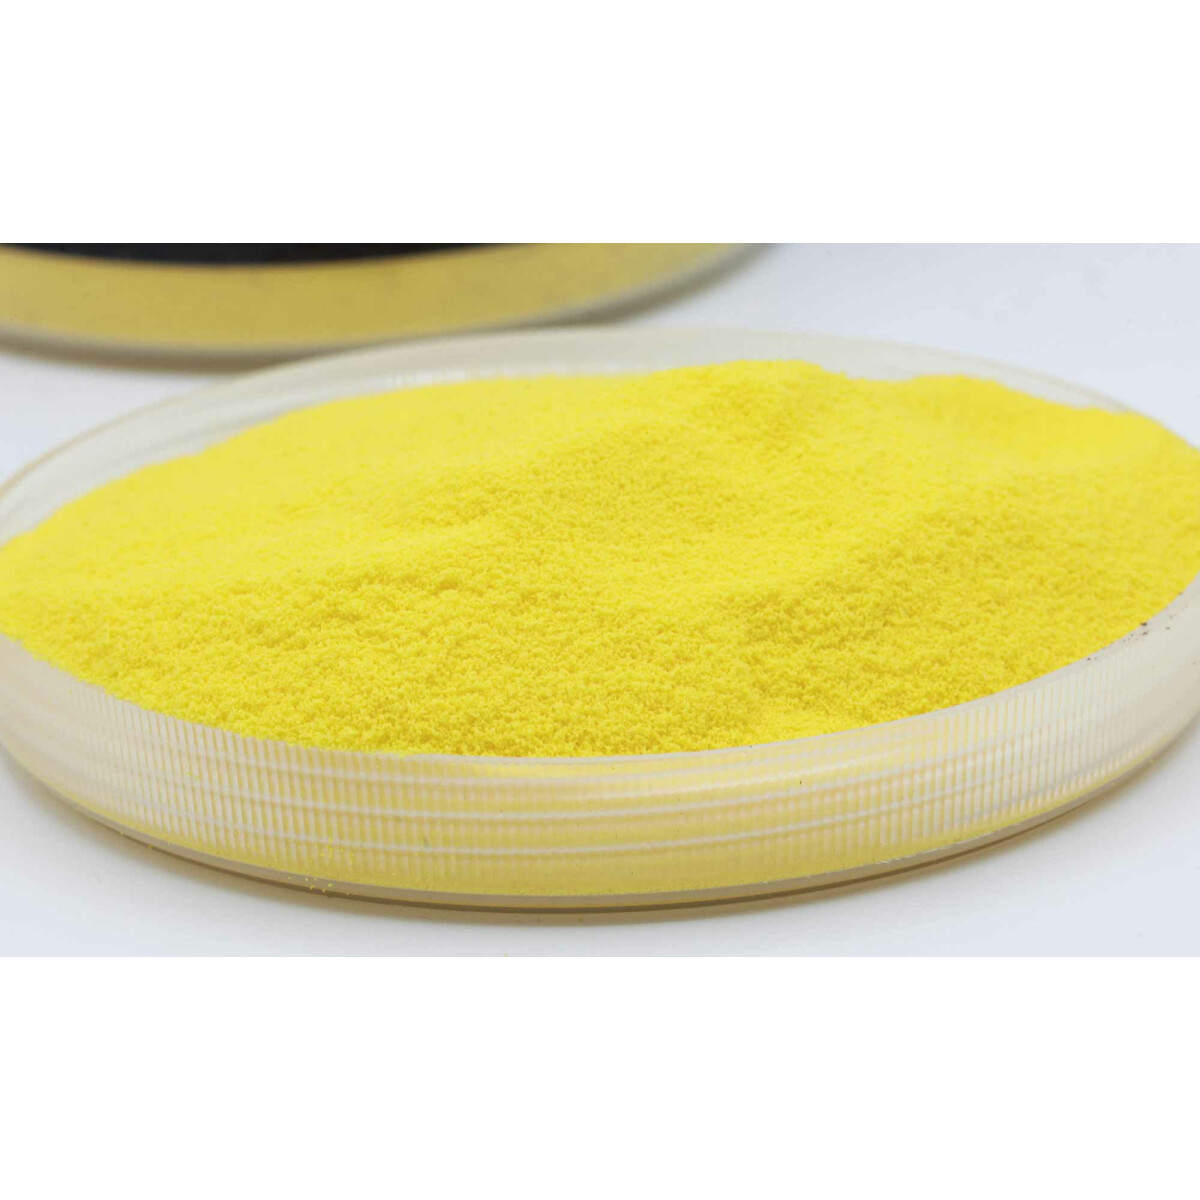 Carpleads Powder Coating - Gelb 1000 g